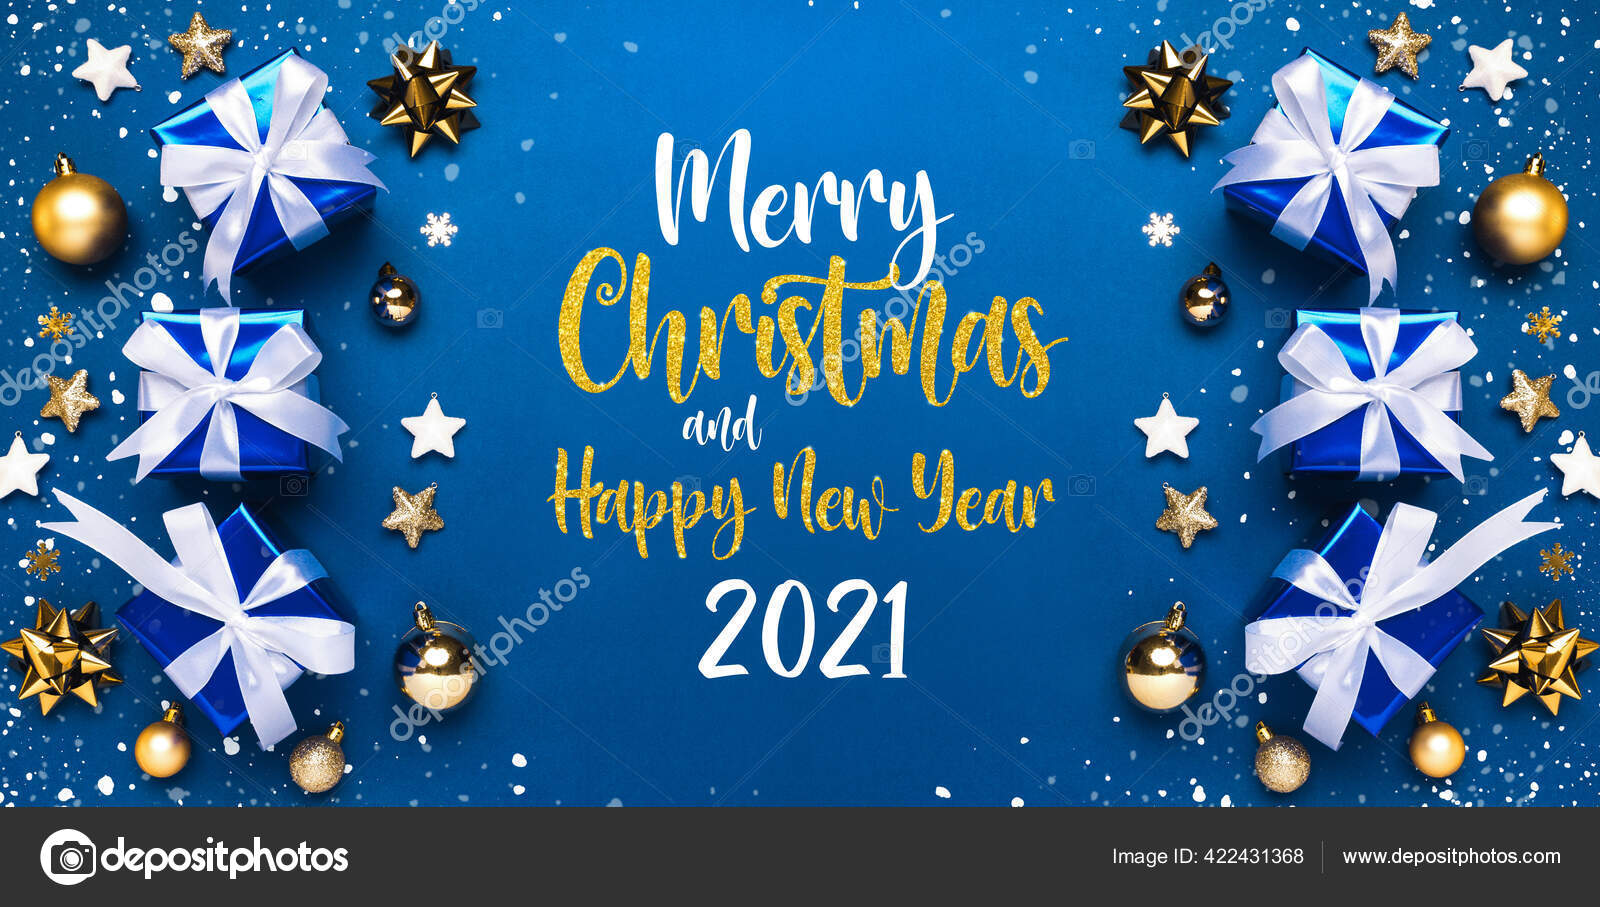 Hãy cùng chúng tôi đón giáng sinh năm mới 2021 bằng những lời chúc tốt đẹp và những hình ảnh đầy sắc màu. Chúc mừng giáng sinh và năm mới 2021! Nhấn vào ảnh để thấy thêm những niềm vui trong mùa lễ hội này.